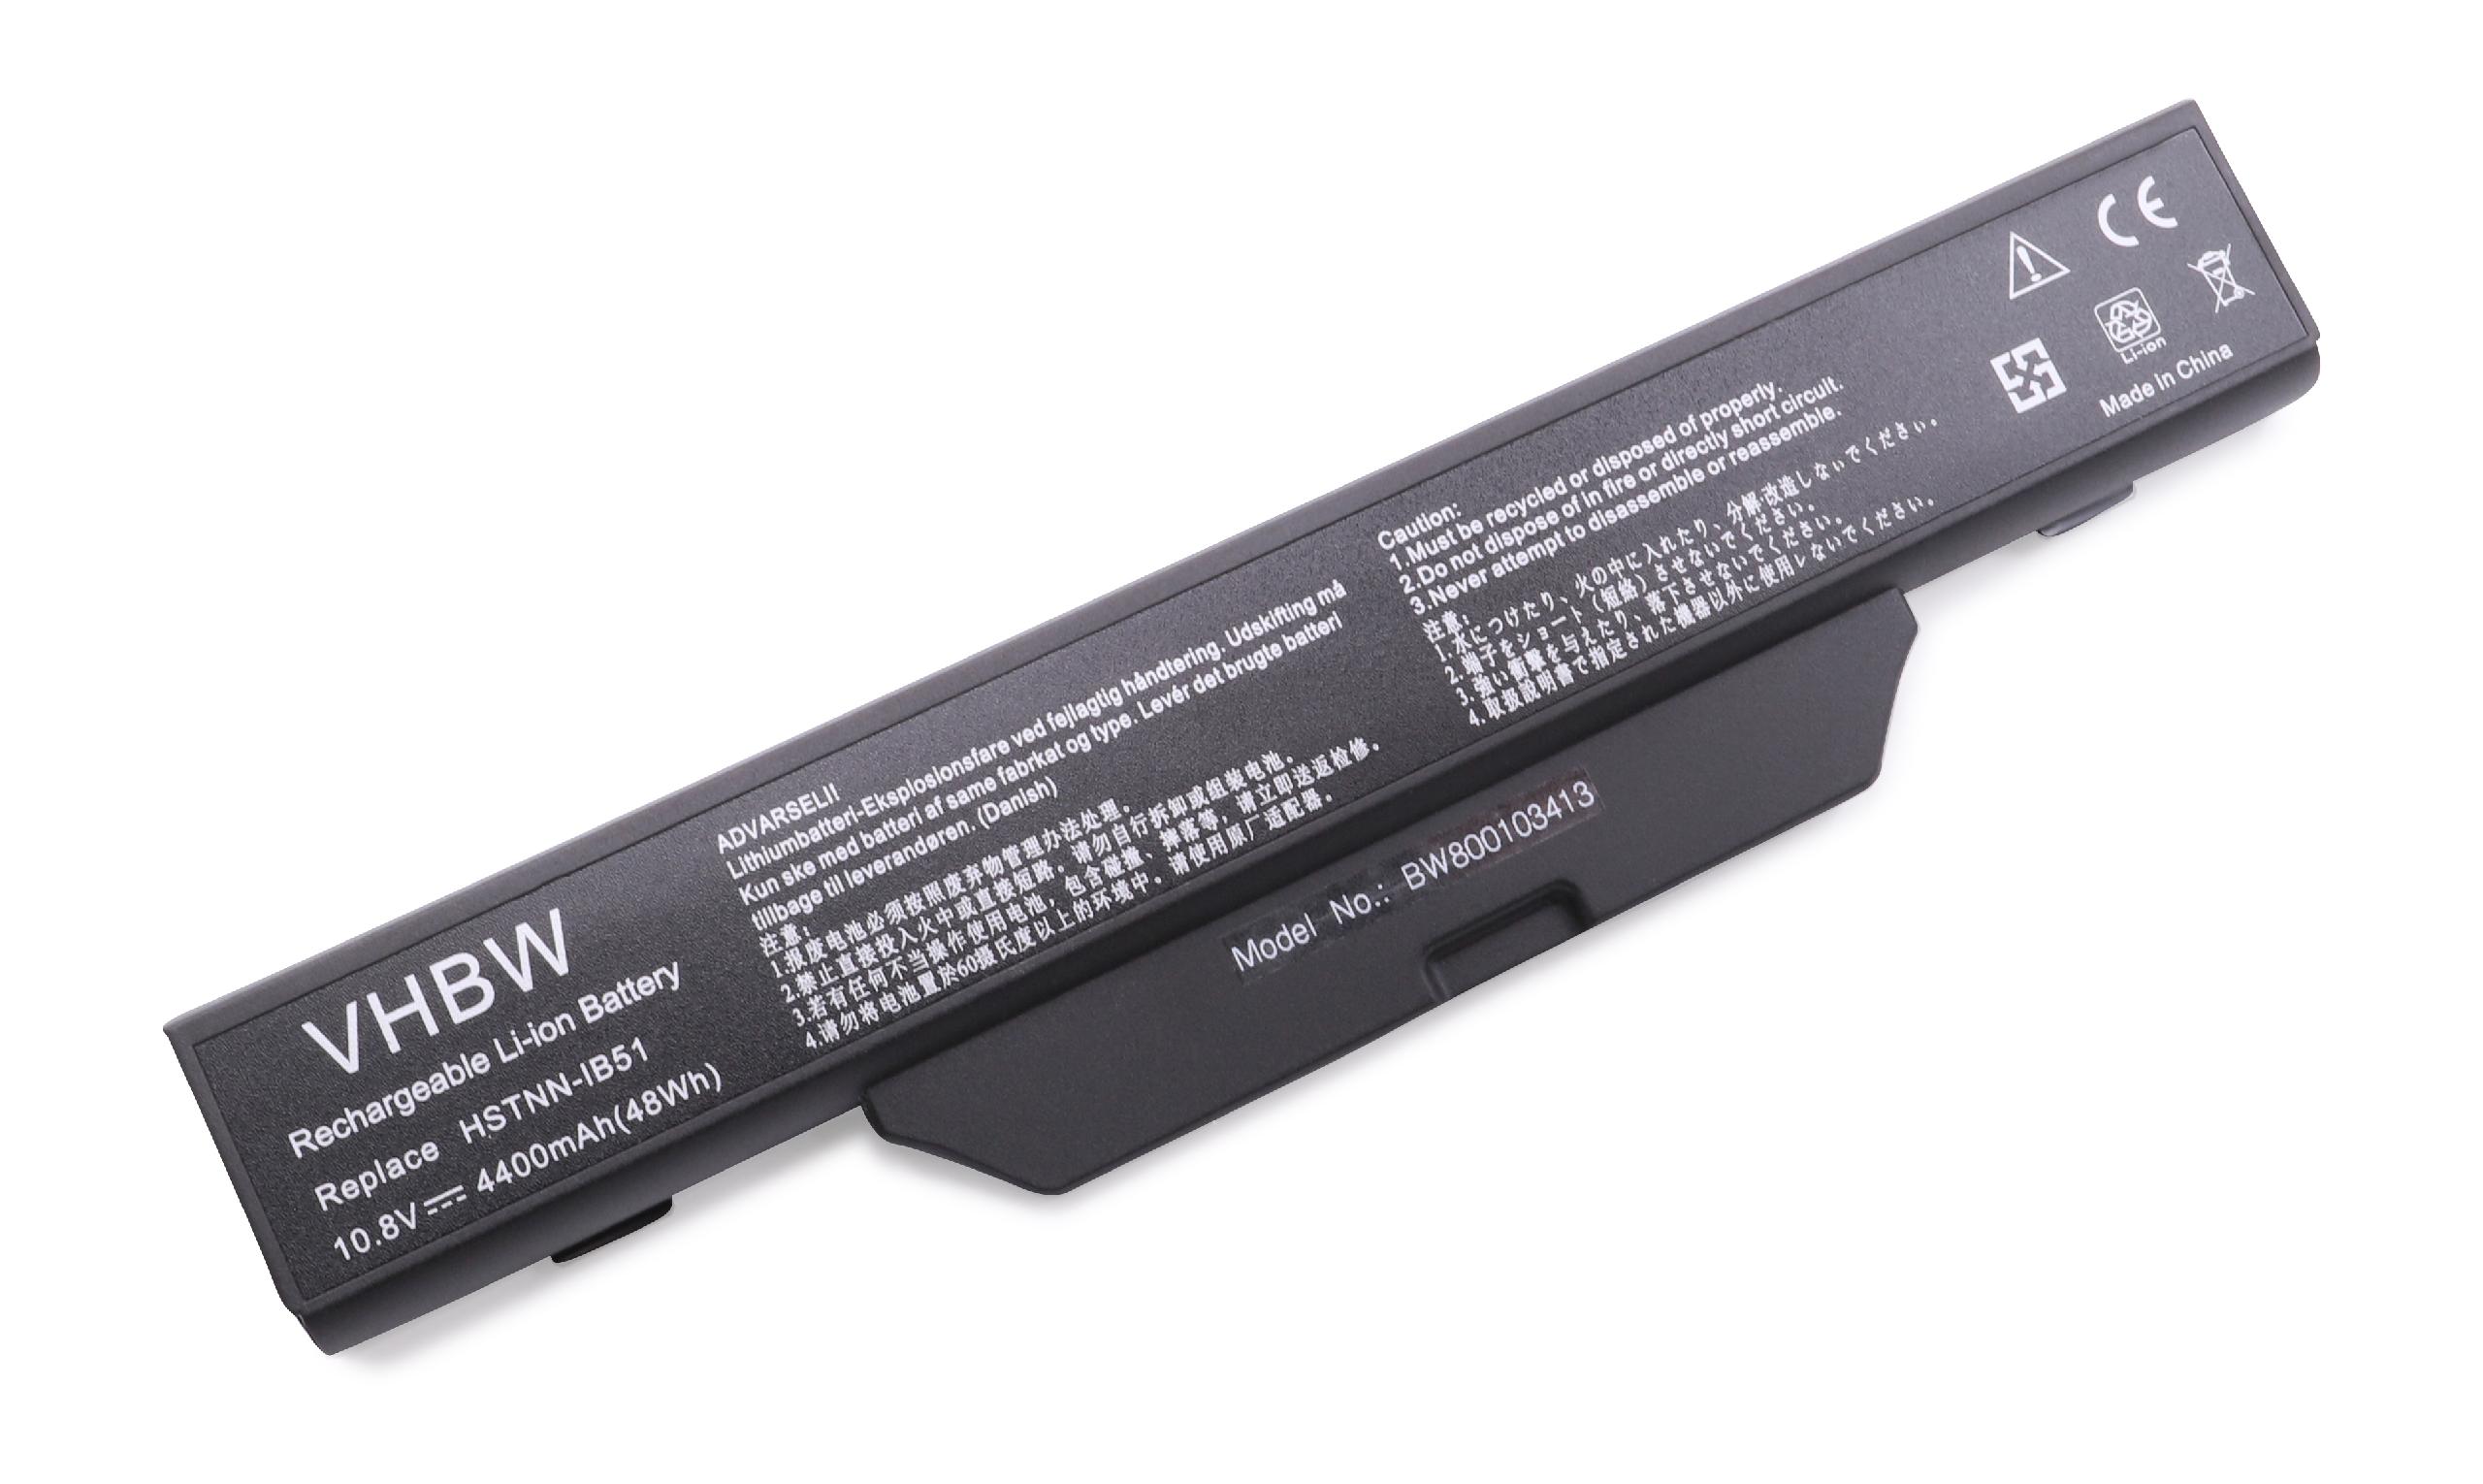 Batterie remplace HP 451086-001, 451085-141, 451085-661 pour ordinateur portable - 4400mAh 10,8V Li-ion, noir